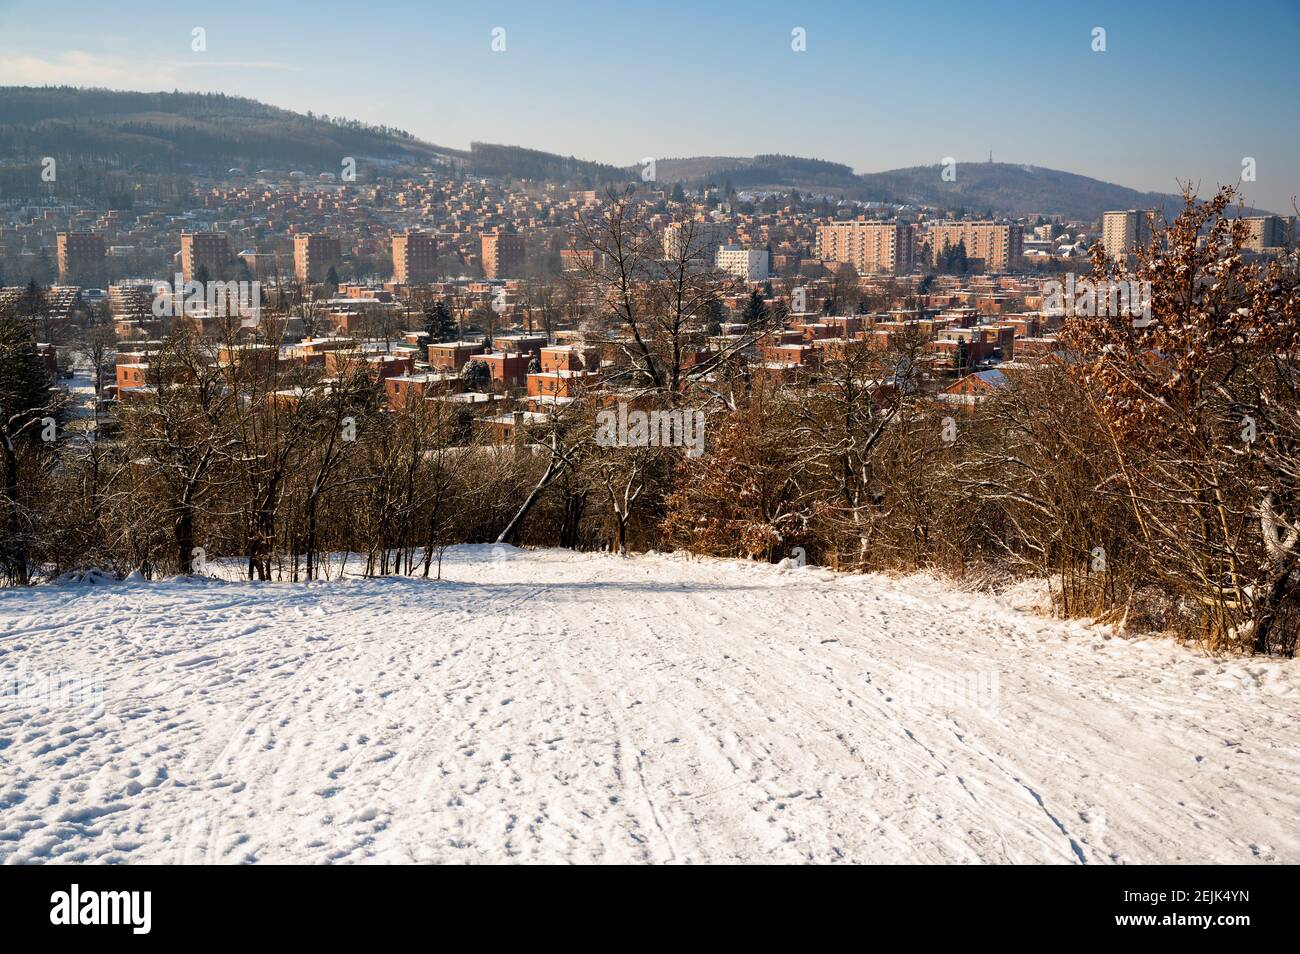 Panoramablick auf einen Teil der Stadt Zlin mit typischer Architektur aus roten Backsteinhäusern, verschneiten Hügeln und Hügeln rund um die Stadt in schneebedeckten sonnigen Wintertag. Cze Stockfoto